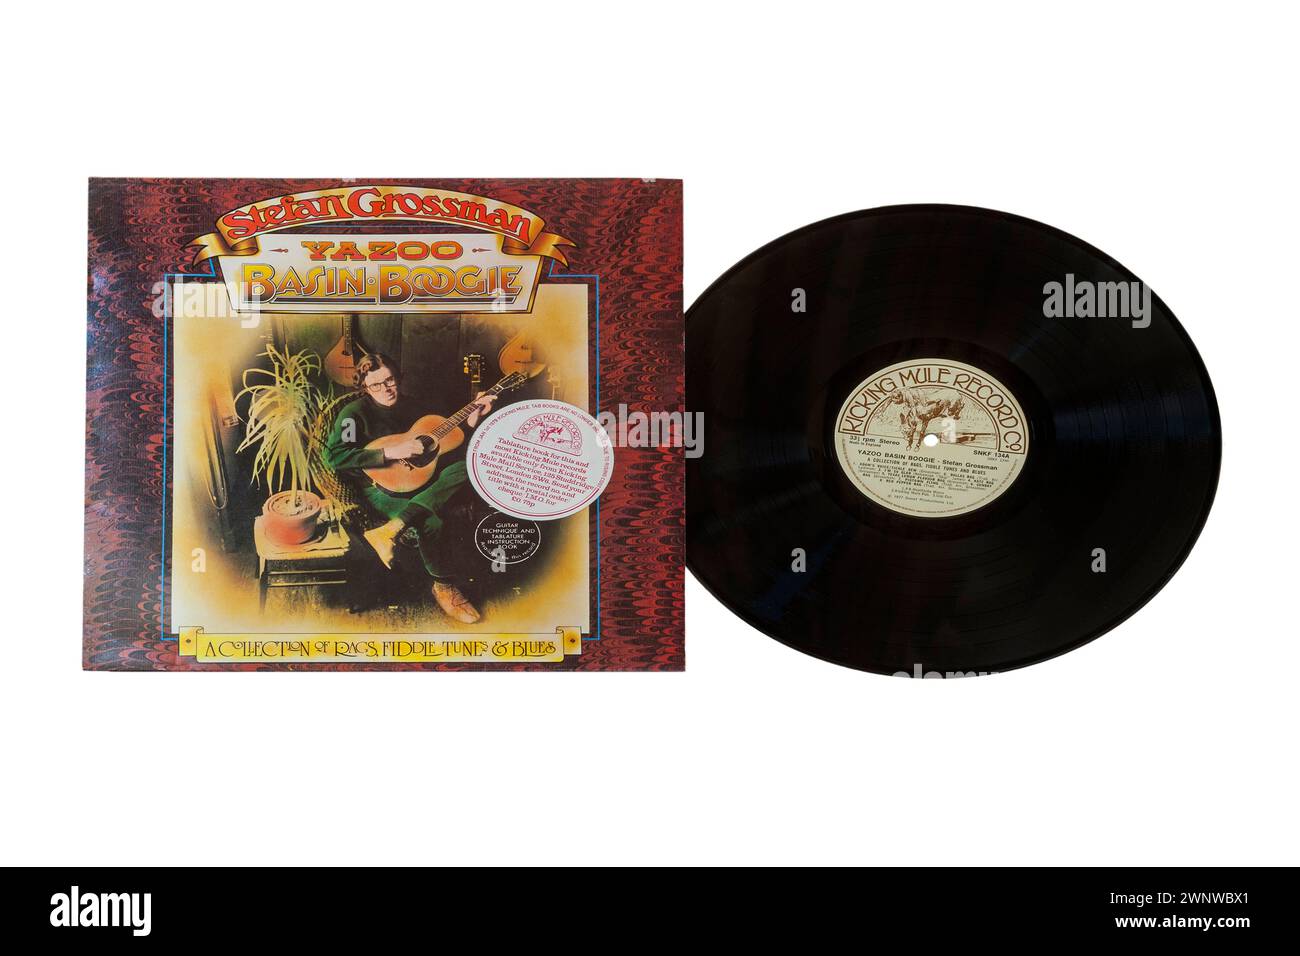 Stefan Grossman Yazoo Basin Boogie Vinyl-Album-Cover isoliert auf weißem Hintergrund - 1977 - eine Sammlung von Lumpen, Fiddle Tunes & Blues Stockfoto